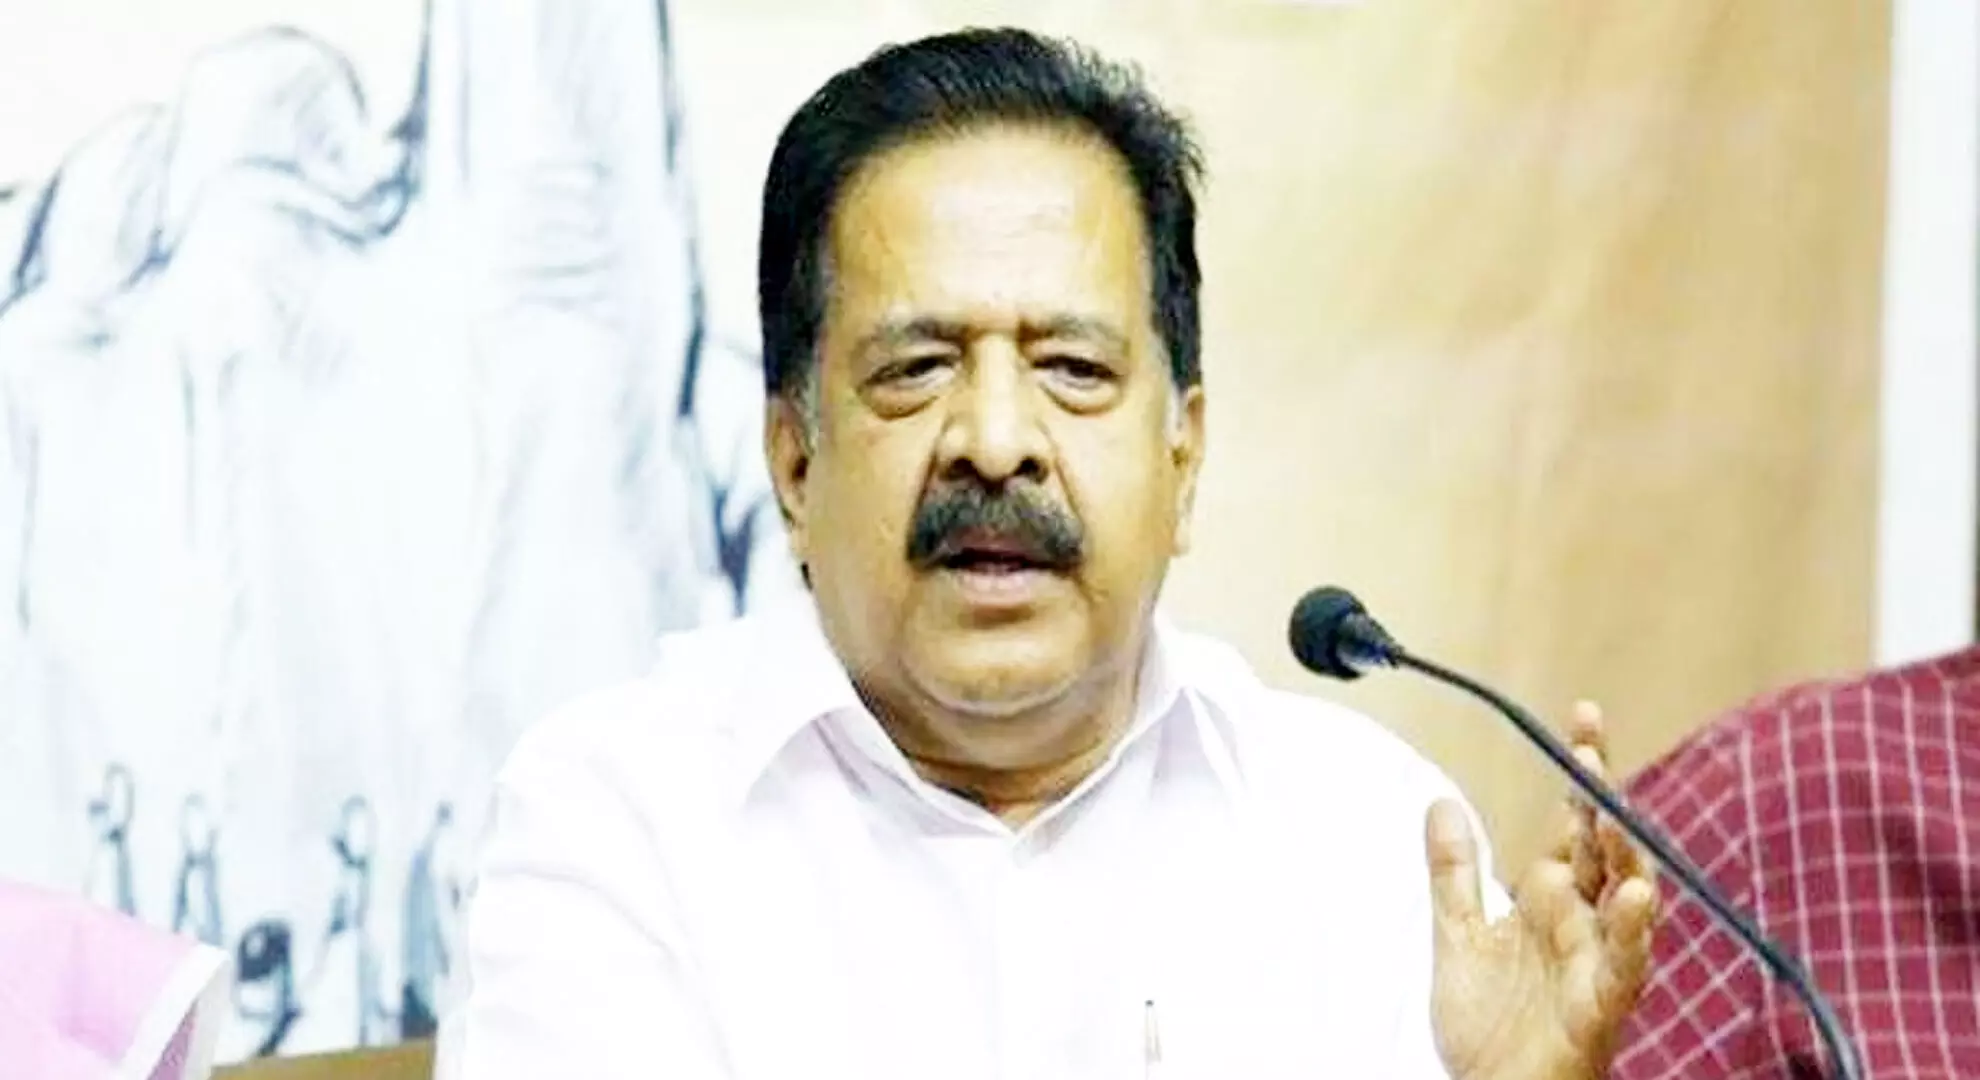 सीएए पर घड़ियाली आंसू बहा रहे हैं केरल के सीएम पिनाराई, वरिष्ठ कांग्रेस नेता का आरोप